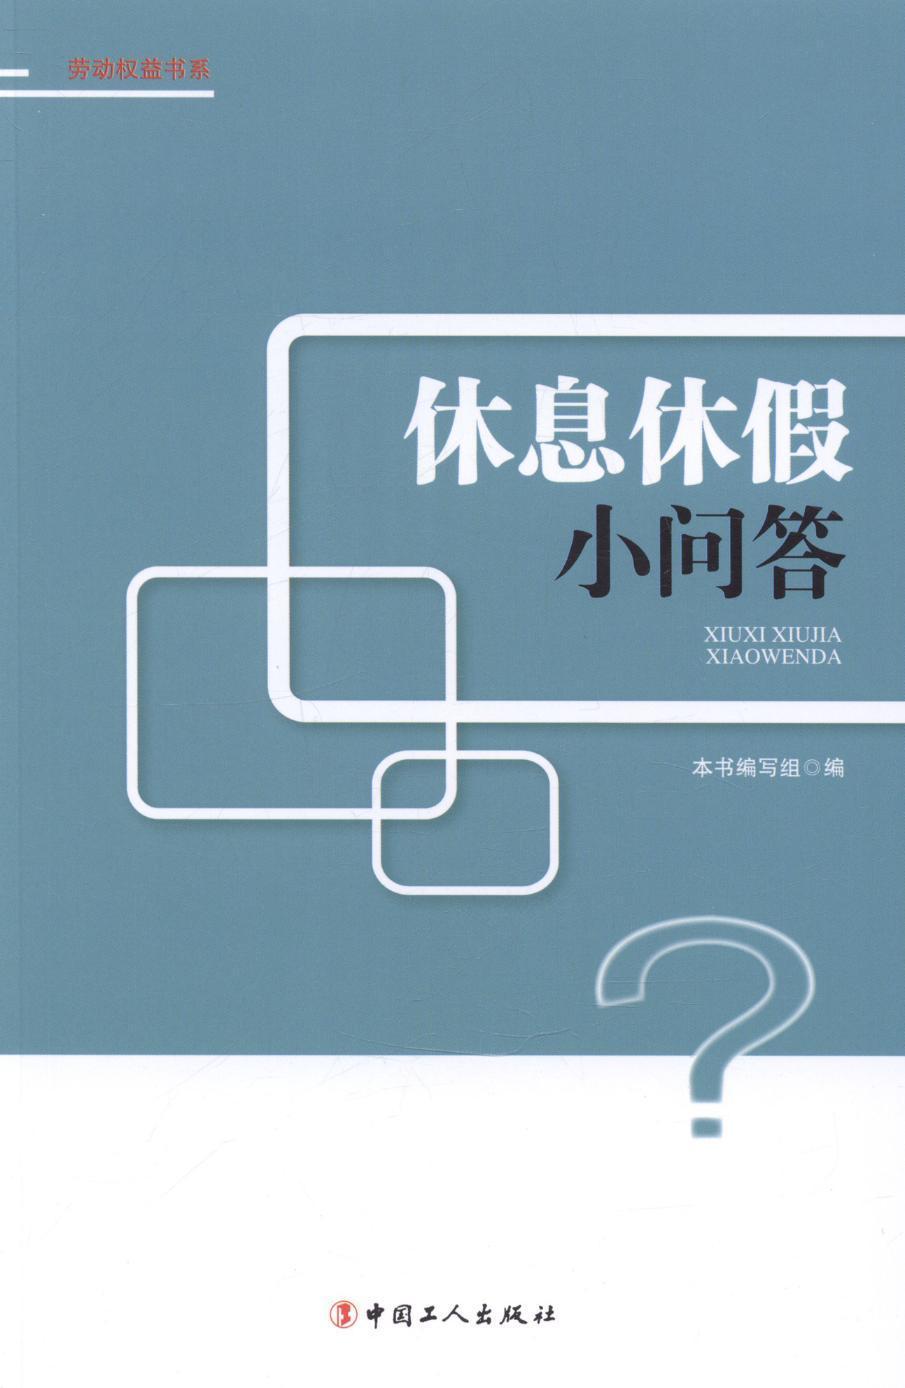 [rt] 休息休假小问答  本书写组  中国工人出版社  法律  劳动法基本知识中国